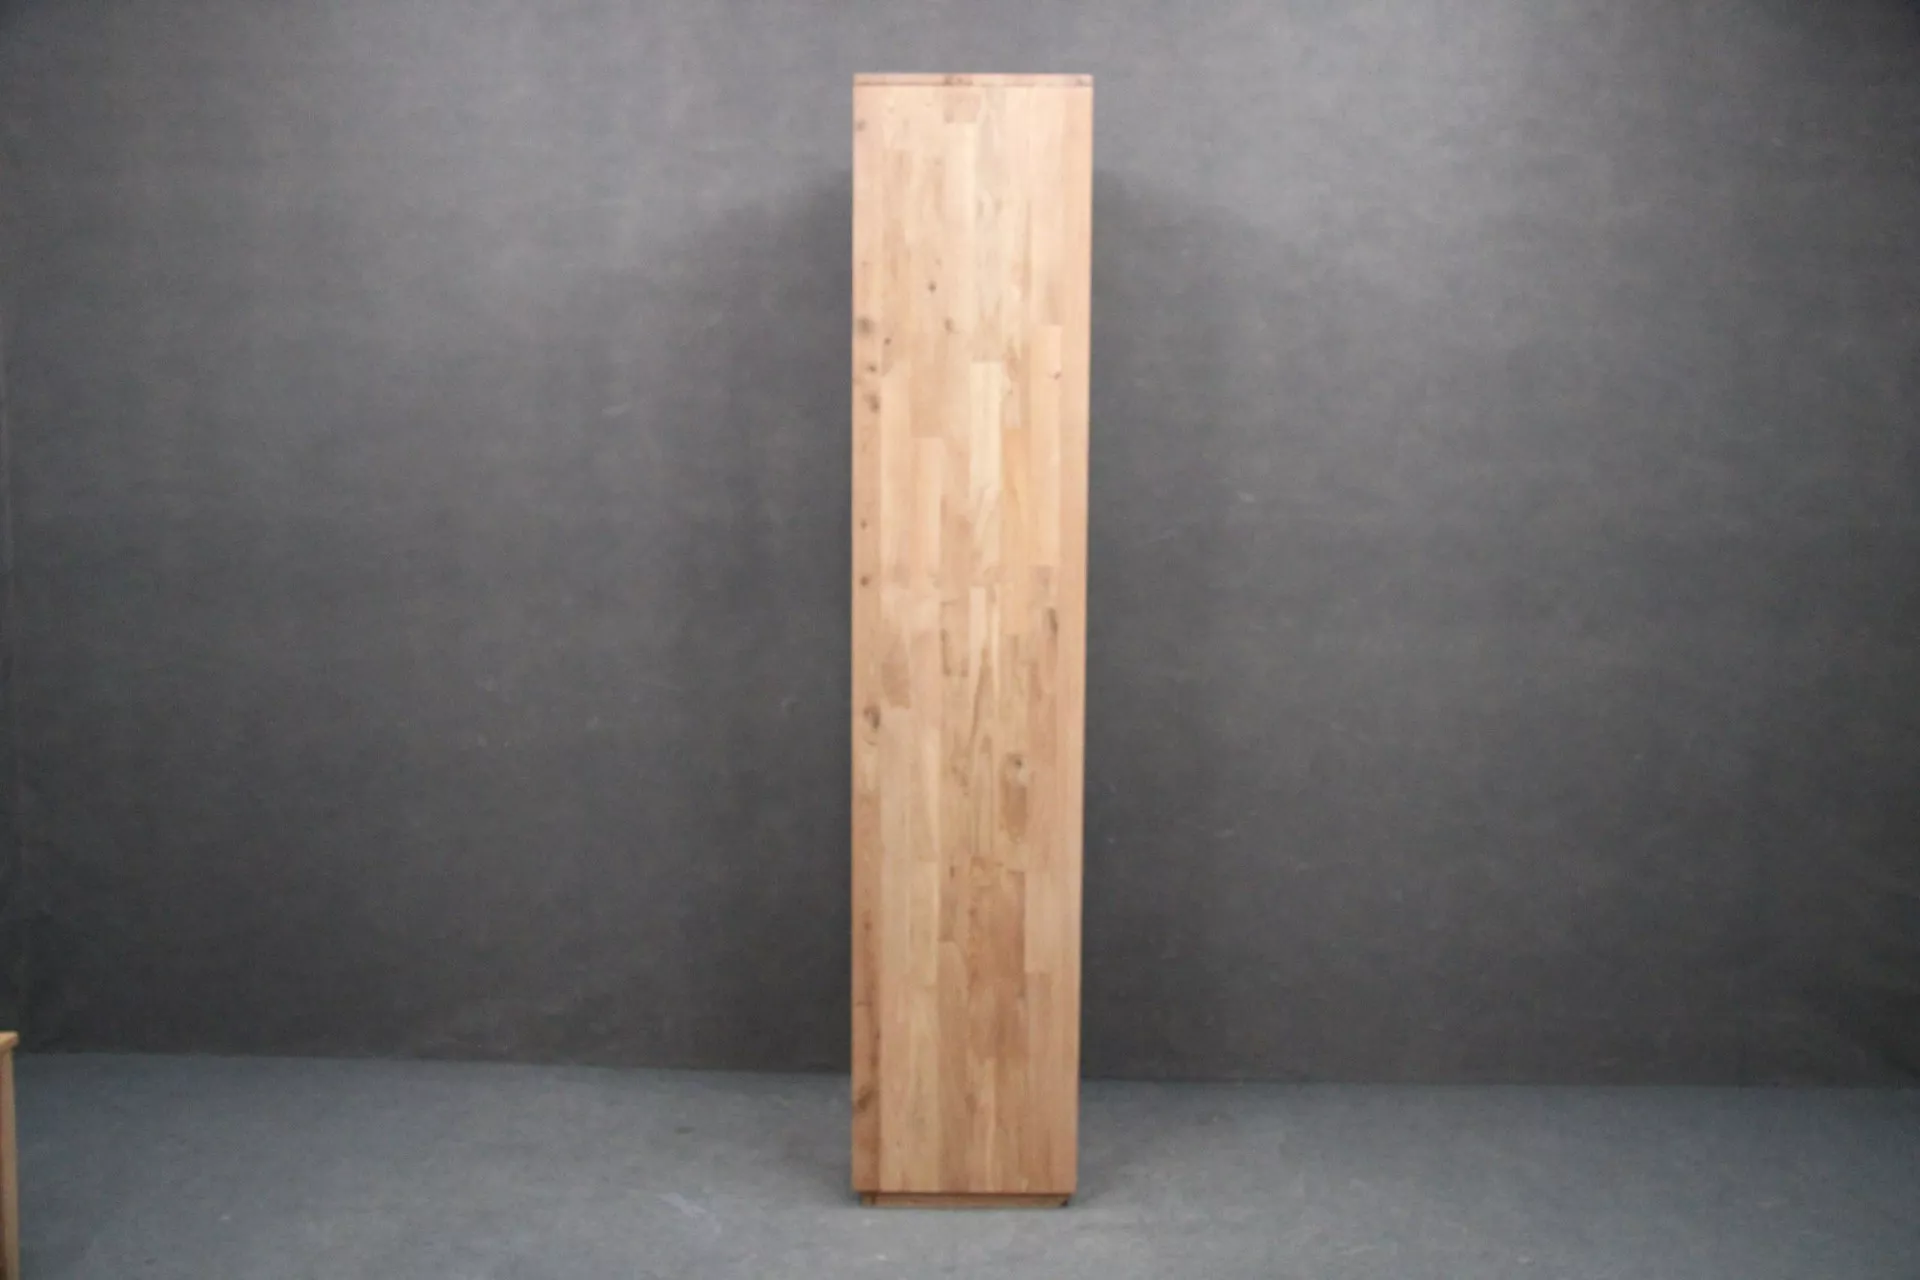 WITRYNA DĘBOWA Lite drewno olejowane 50x40x200 cm (1) B 8389